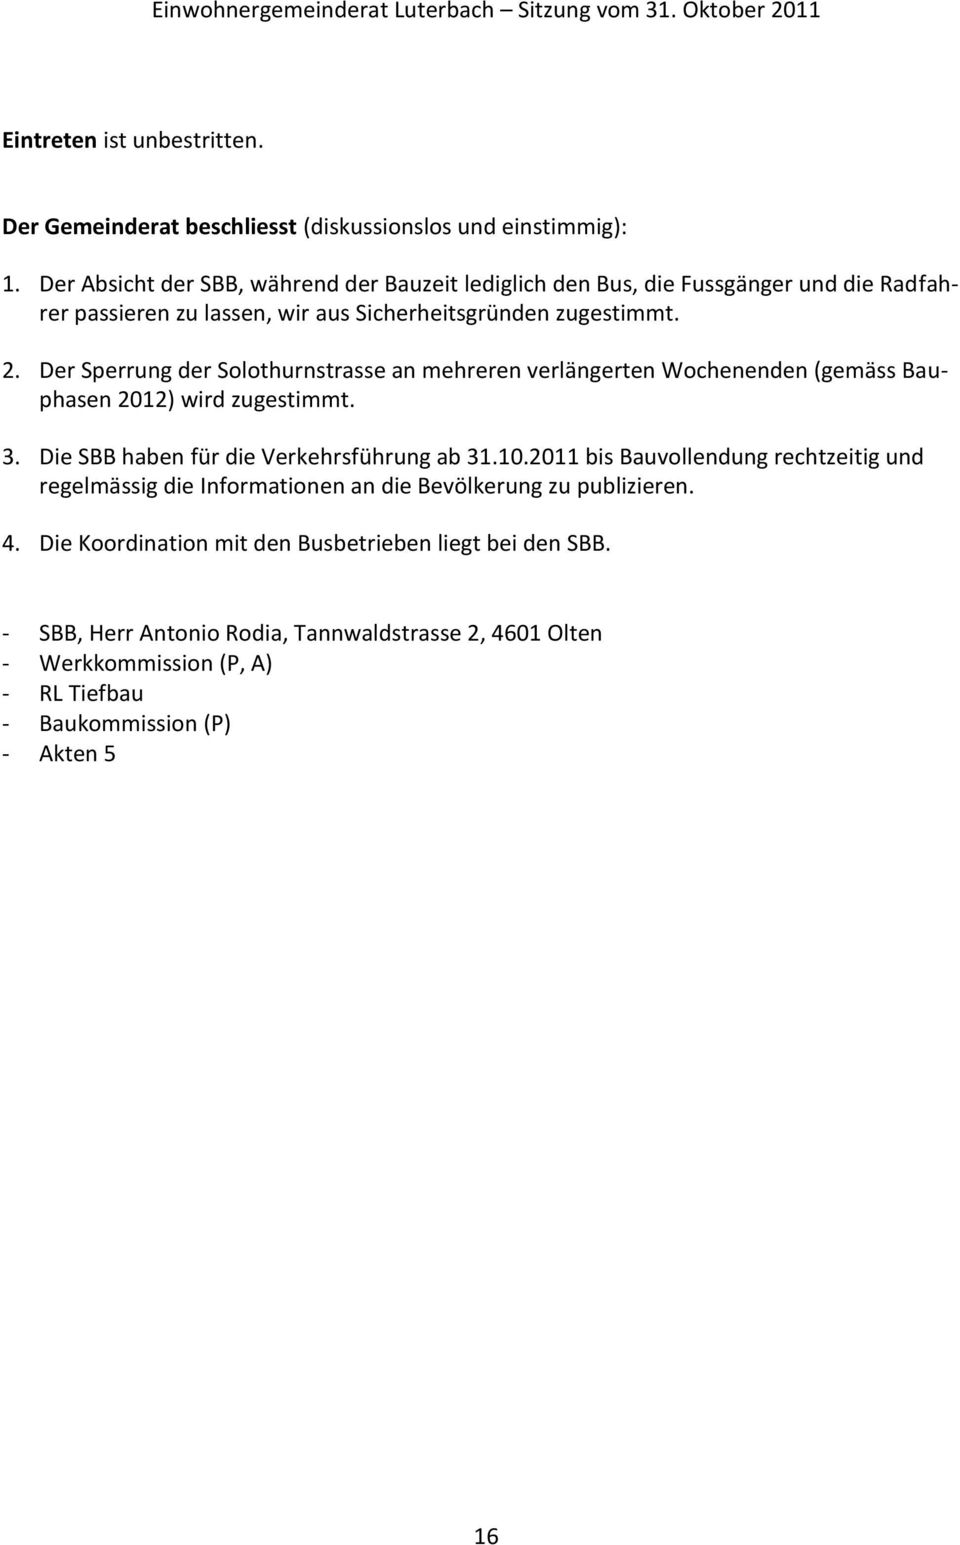 Der Sperrung der Solothurnstrasse an mehreren verlängerten Wochenenden (gemäss Bauphasen 2012) wird zugestimmt. 3. Die SBB haben für die Verkehrsführung ab 31.10.